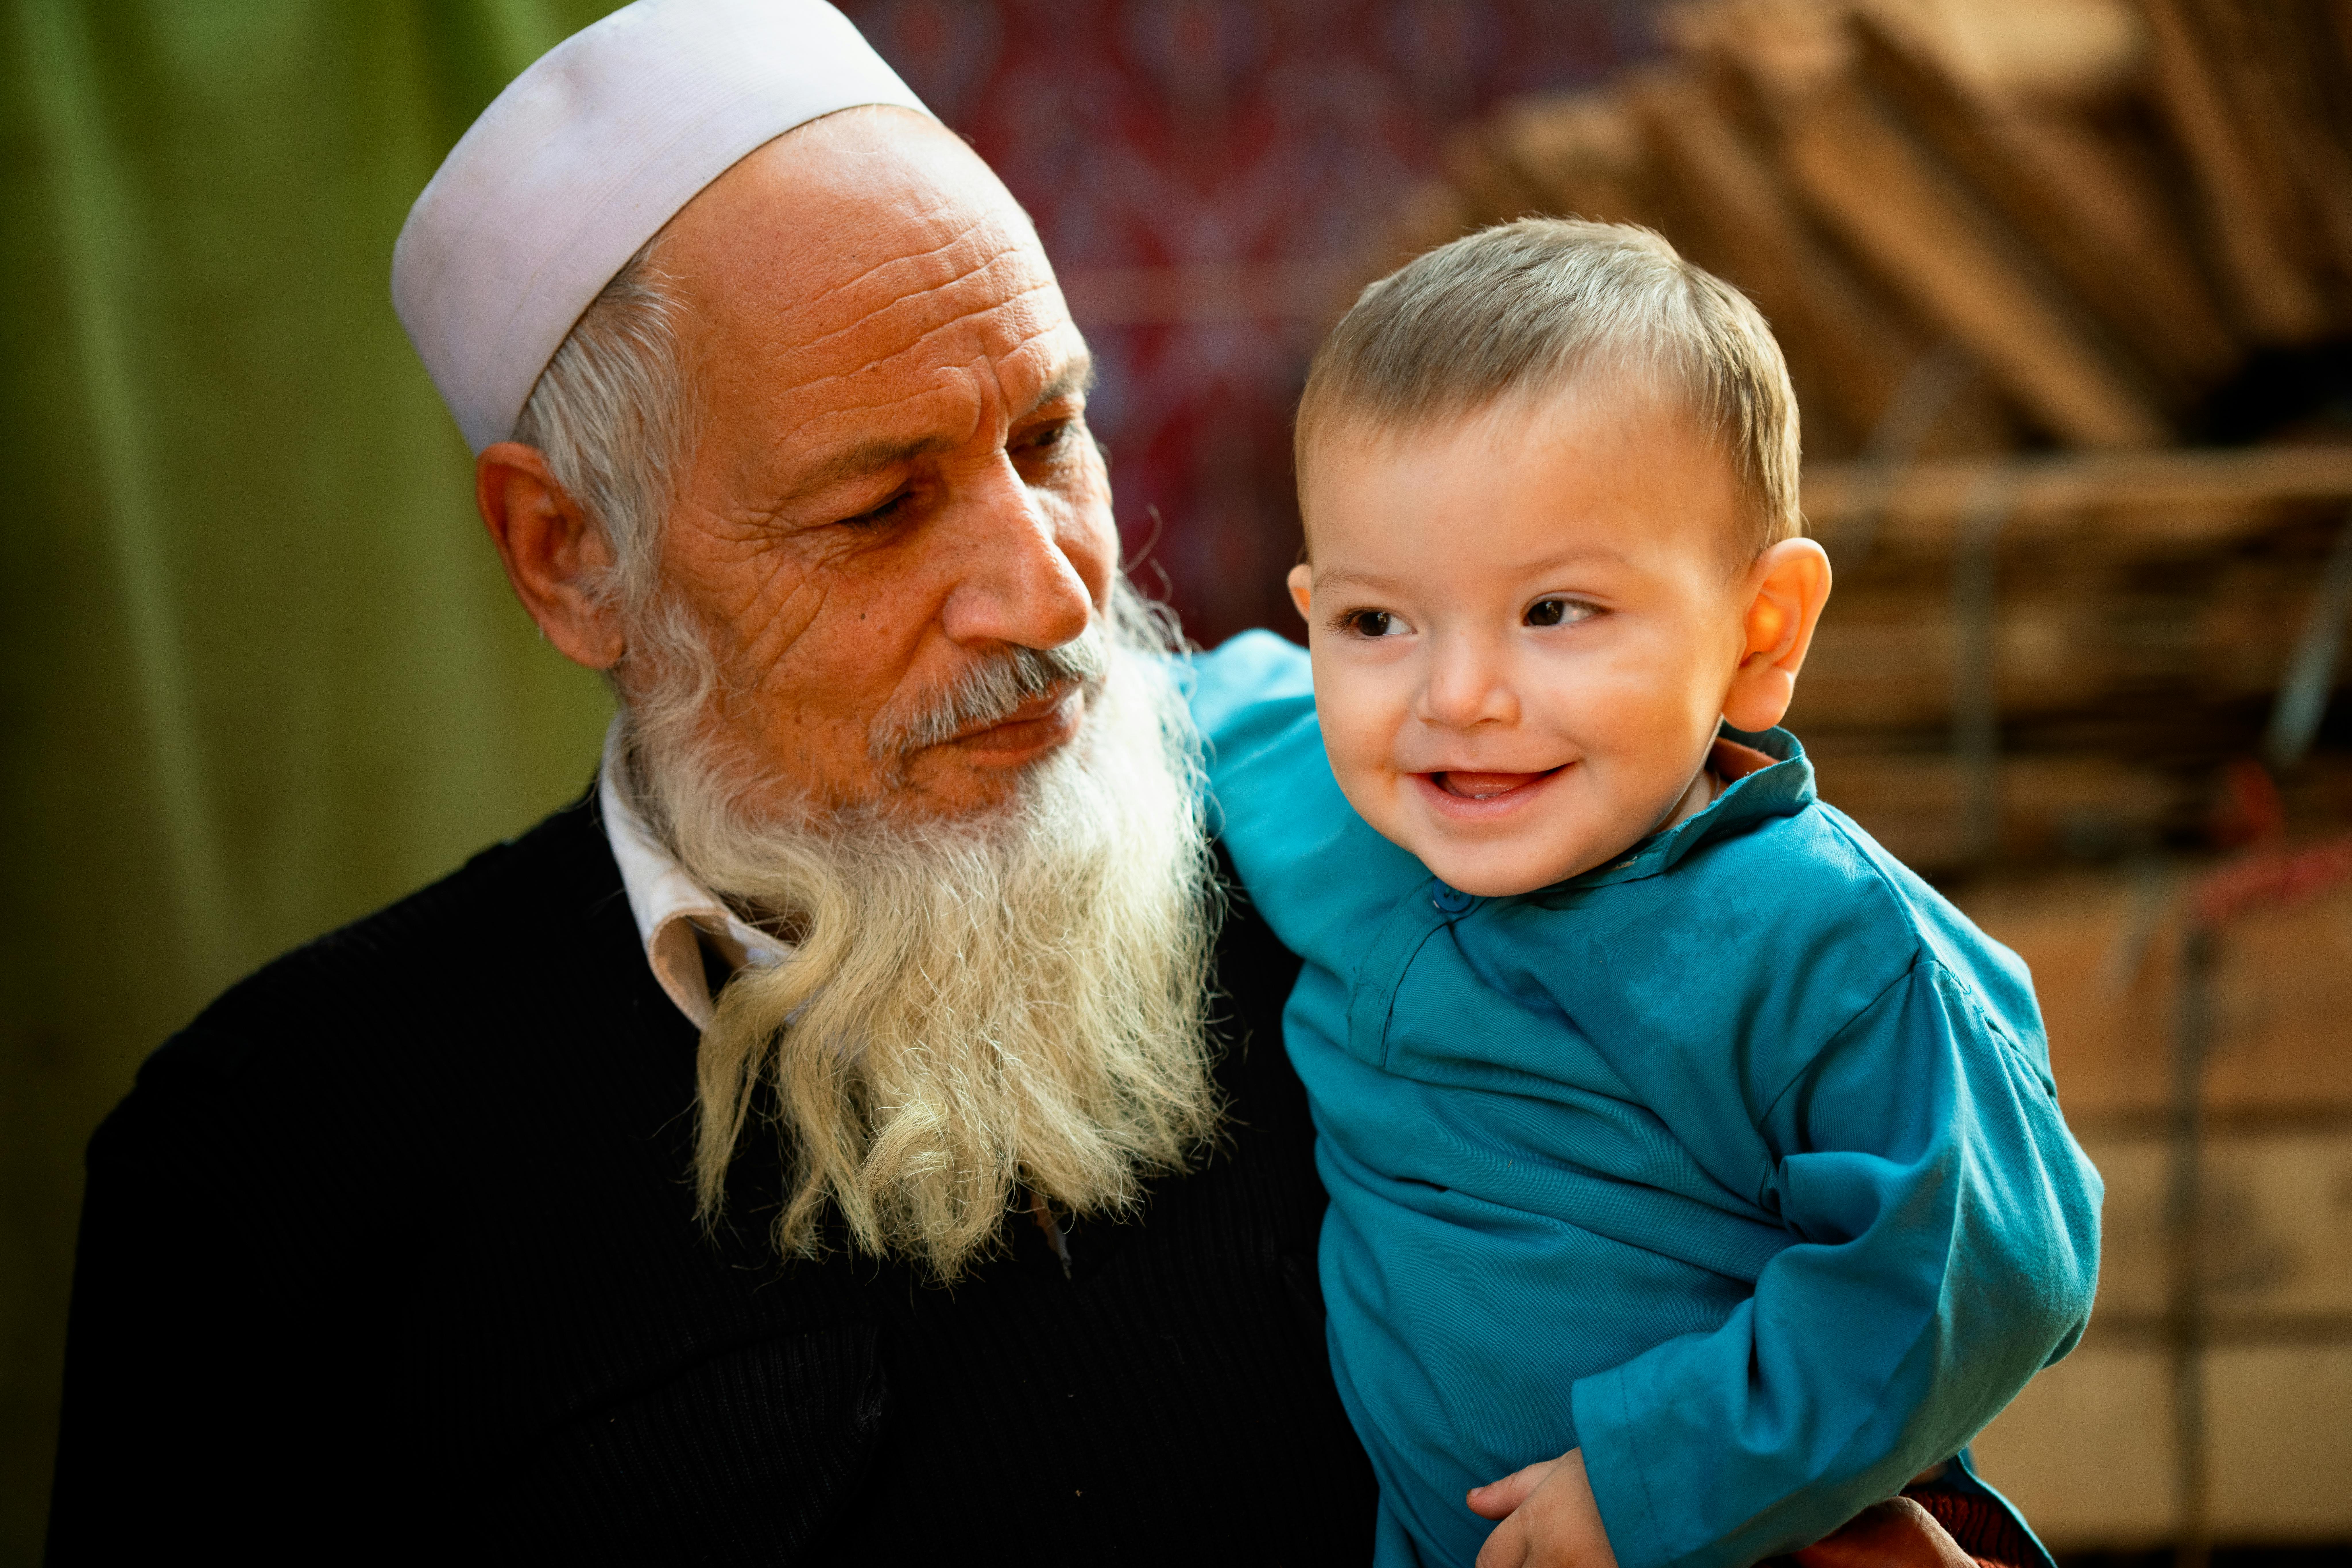 Pakistan, Lahore. Nonno Muhammad attende con il piccolo Nazir che arrivi il loro turno presso il centro vaccinale di Lahore.